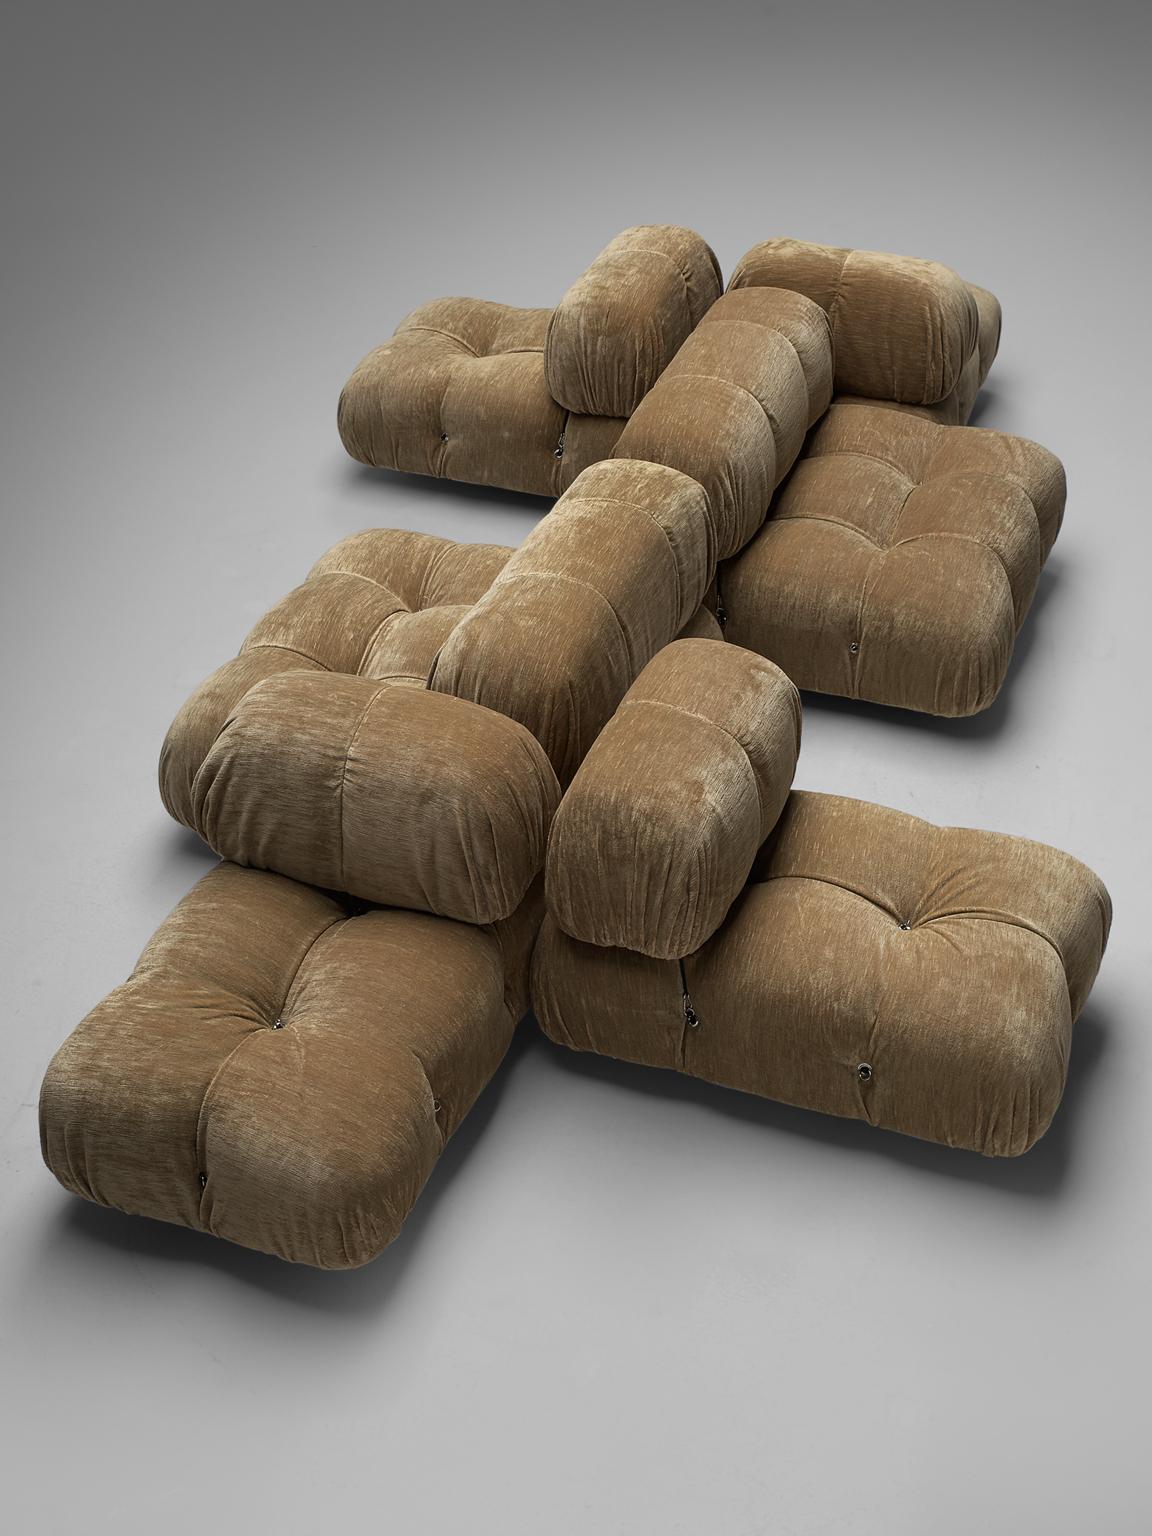 Italian Mario Bellini Reupholstered 'Camaleonda' Modular Sofa in Beige Pierre Frey